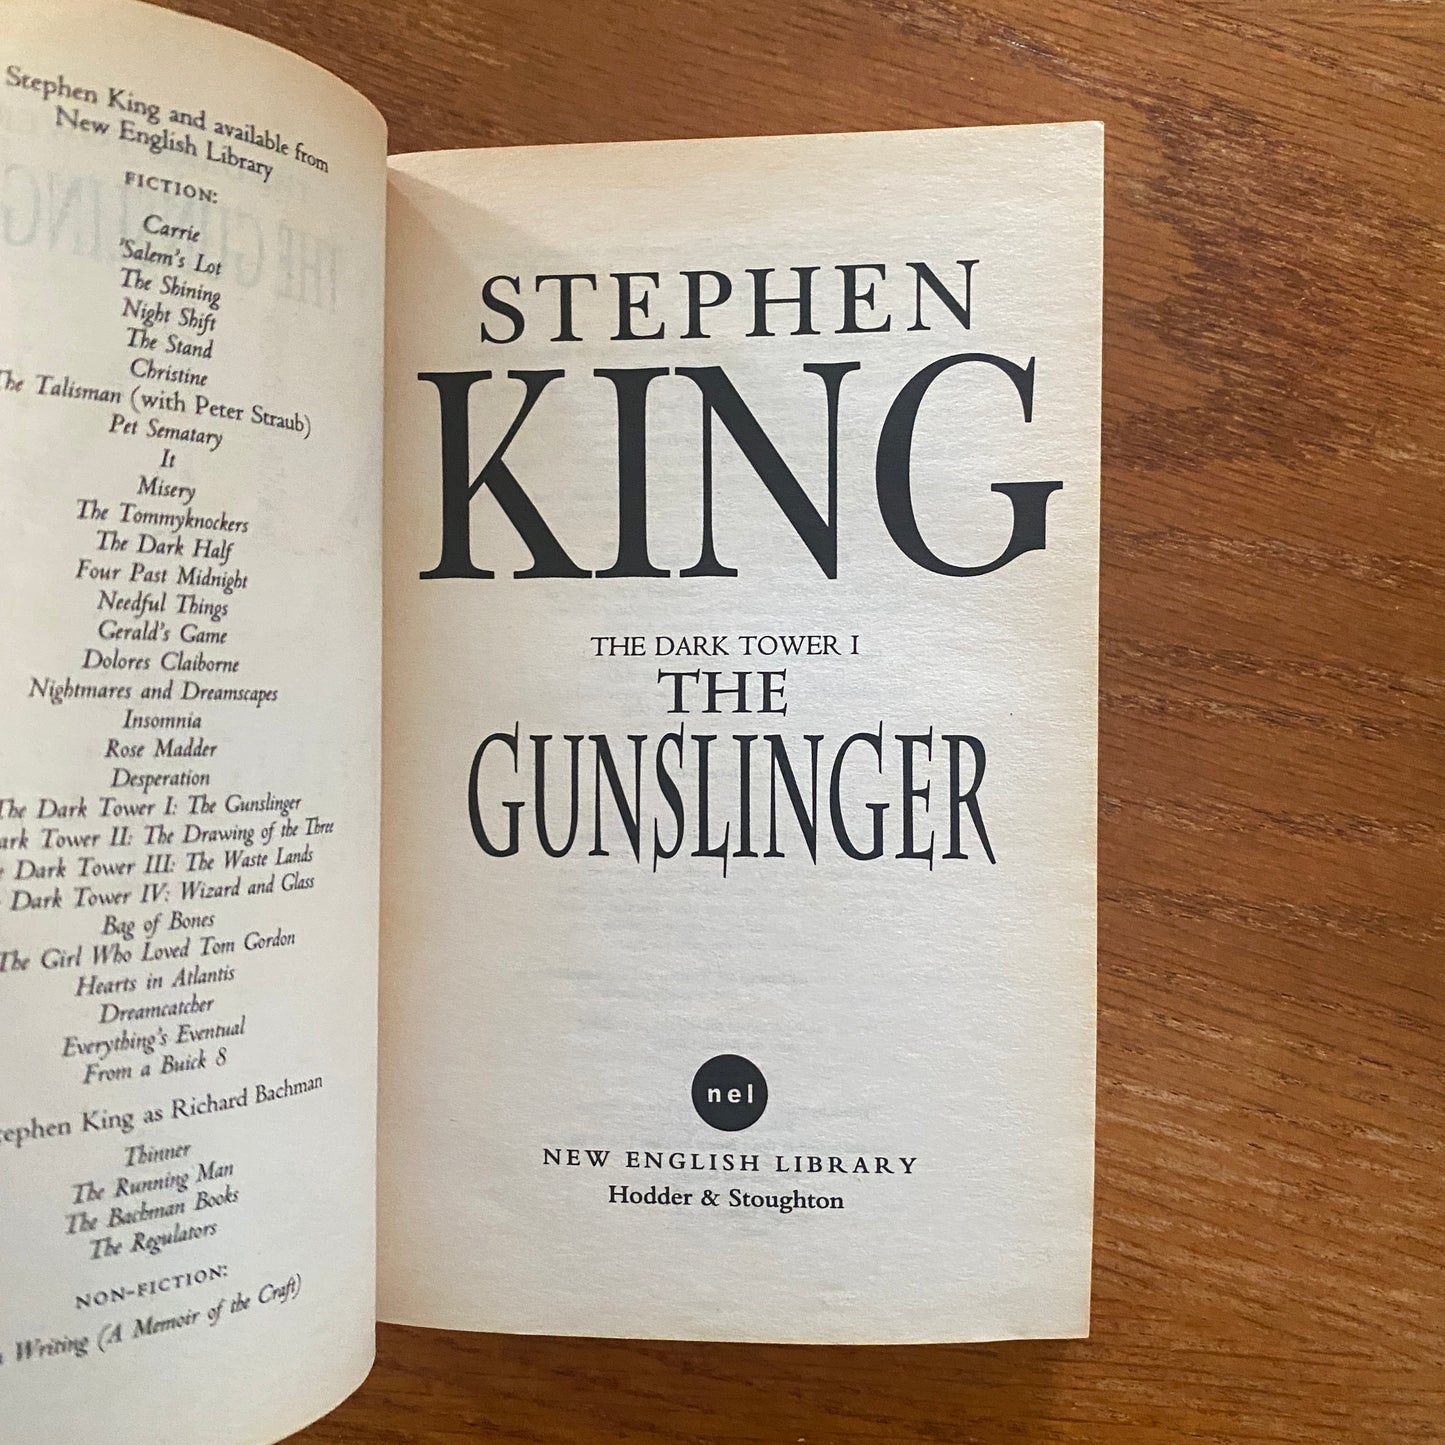 The Dark Tower I: The Gunslinger - Stephen King